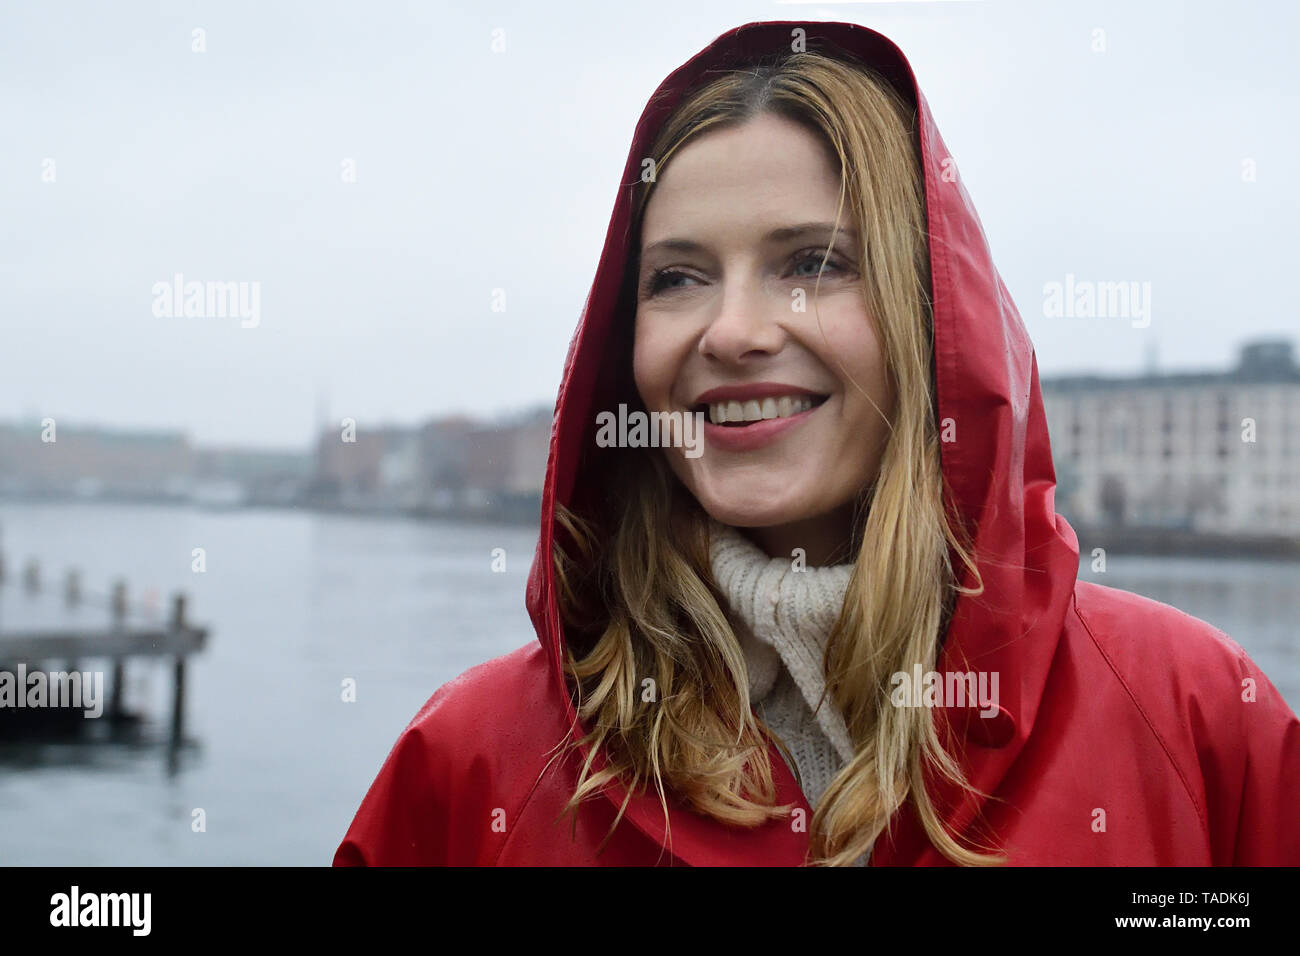 Danemark, copenhague, portrait de femme heureuse au bord de l'eau par temps de pluie Banque D'Images